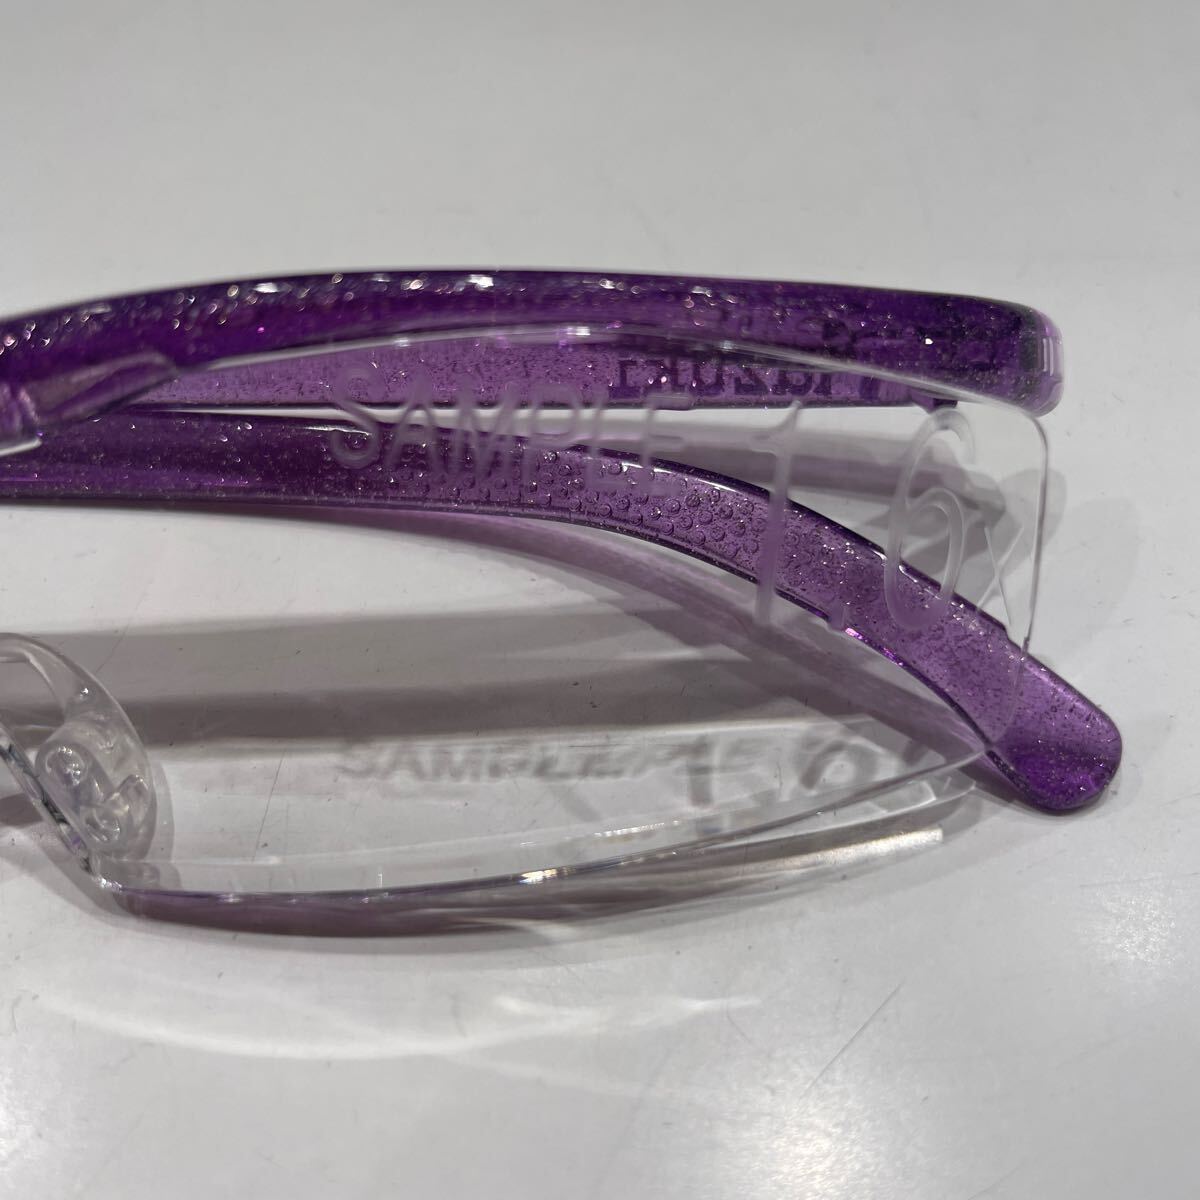 ハズキルーペ クリアレンズ 見本品 レンズ左にSANPLE1.60の刻印があります綺麗 ハズキルーペコンパクト 眼鏡店引き取り品_画像3